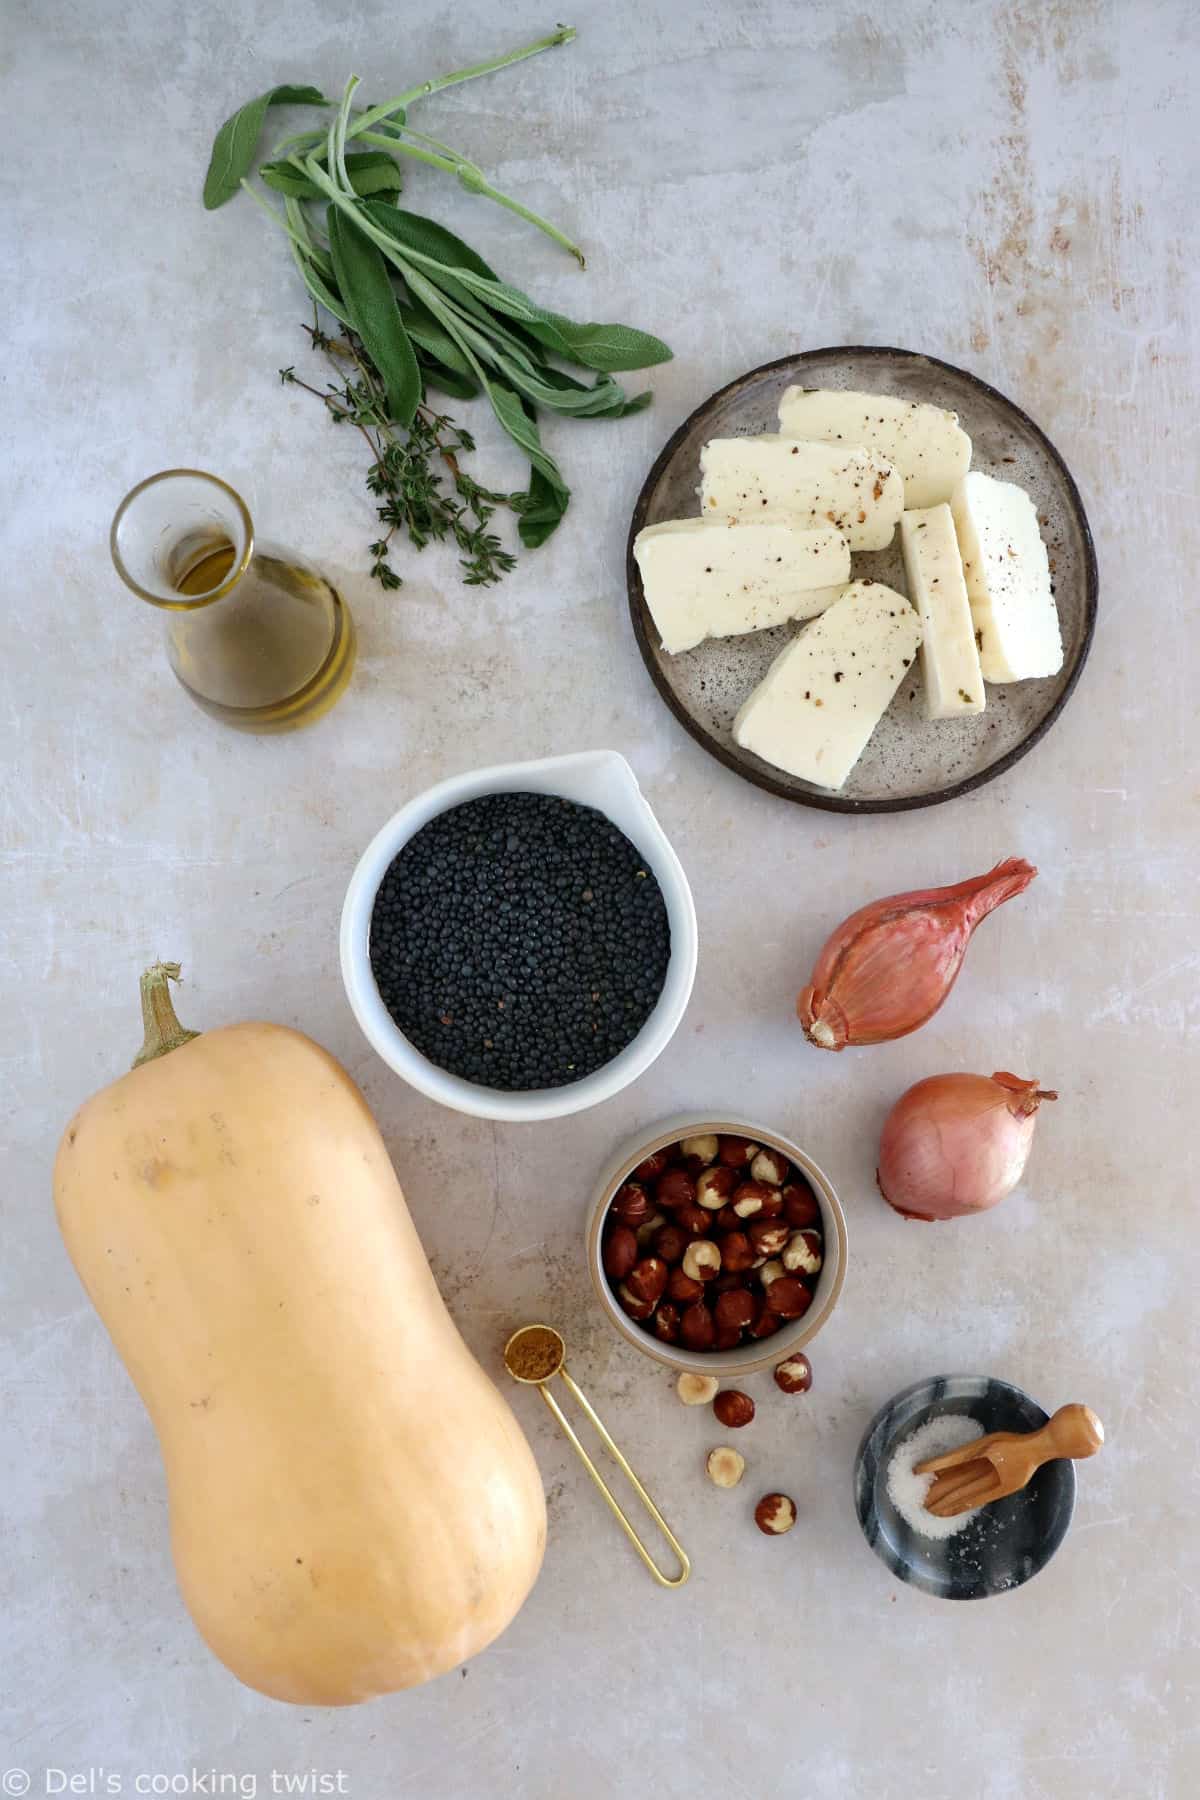 La courge butternut farcie aux lentilles et au halloumi est une recette végétarienne toute douce, à la fois saine, sans gluten et nourrissante.